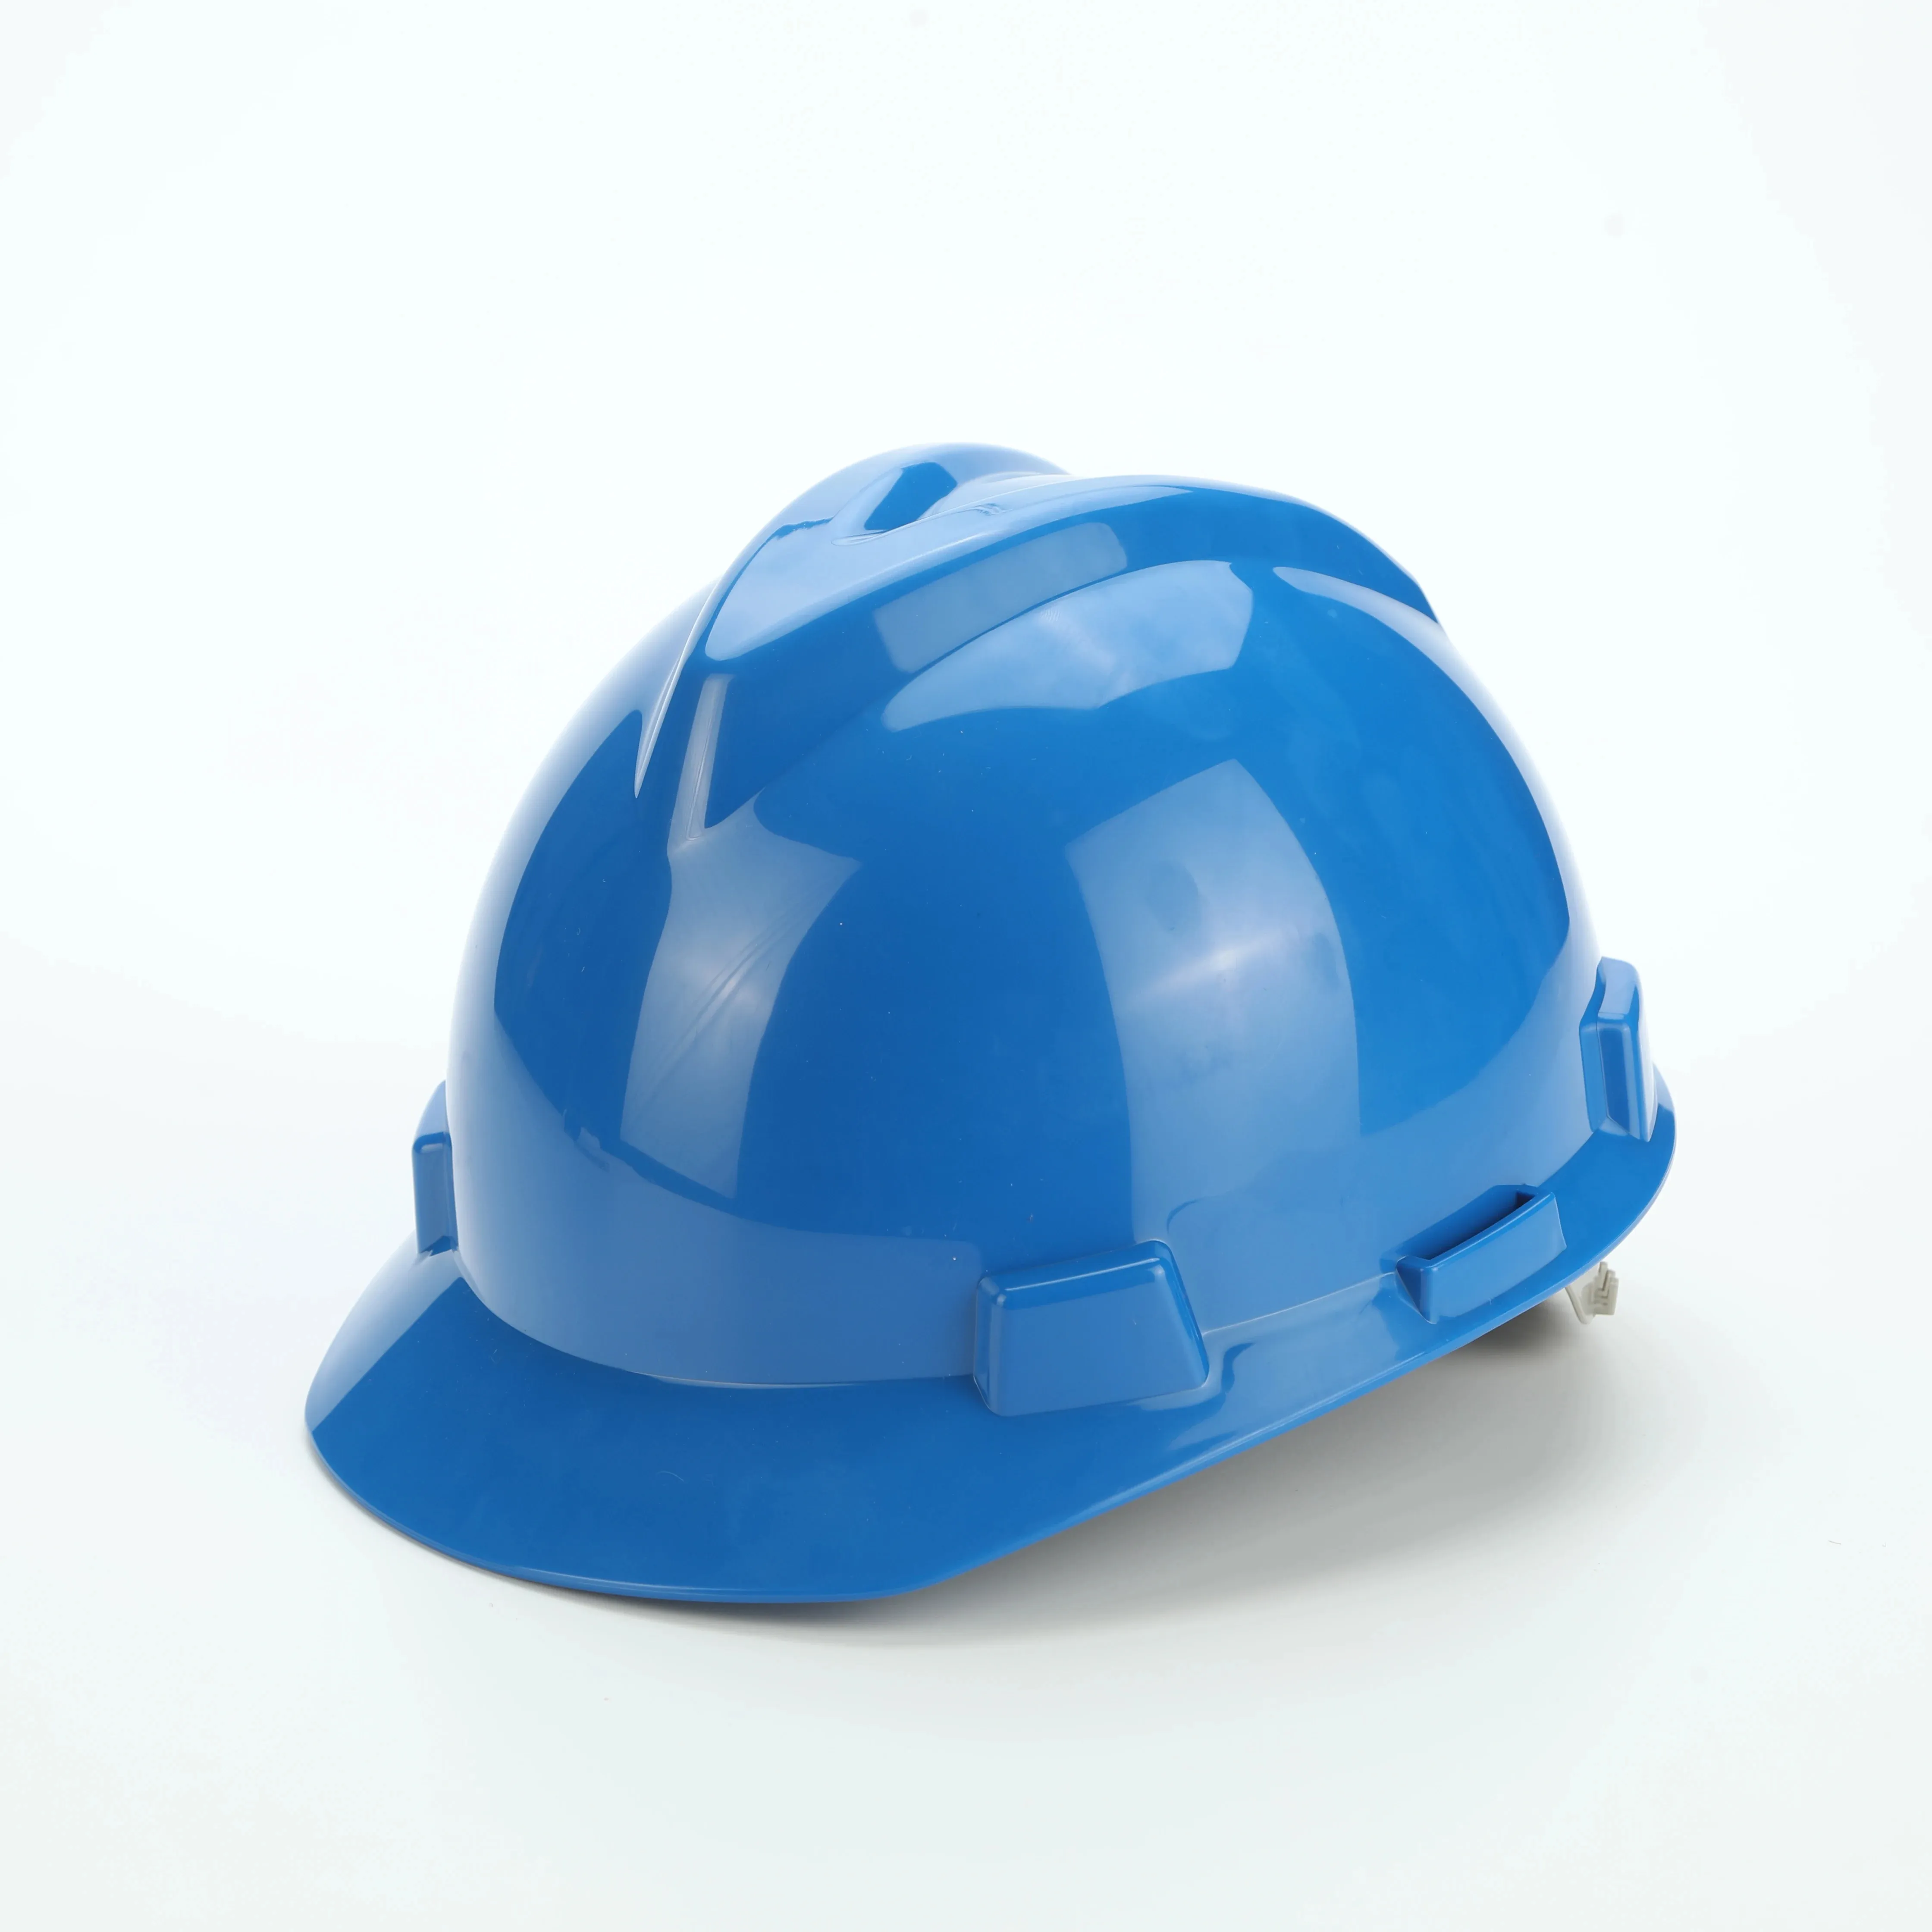 A buon mercato HDPE materiali cricchetto protezione del lavoro casco di sicurezza costruzione